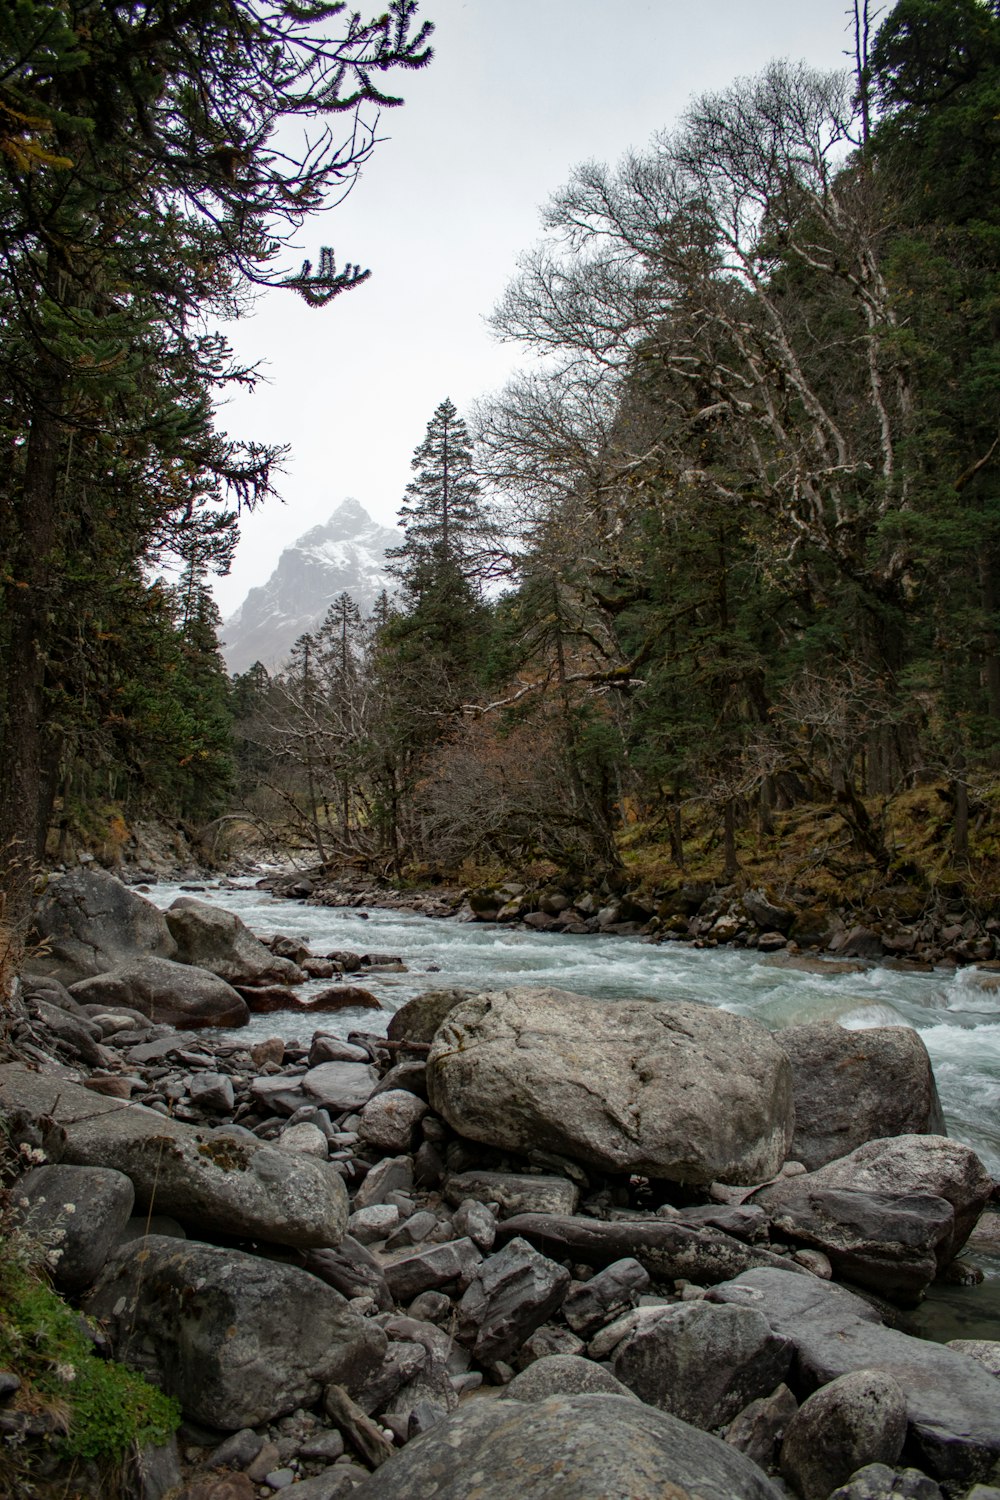 Un fiume che attraversa una foresta piena di rocce